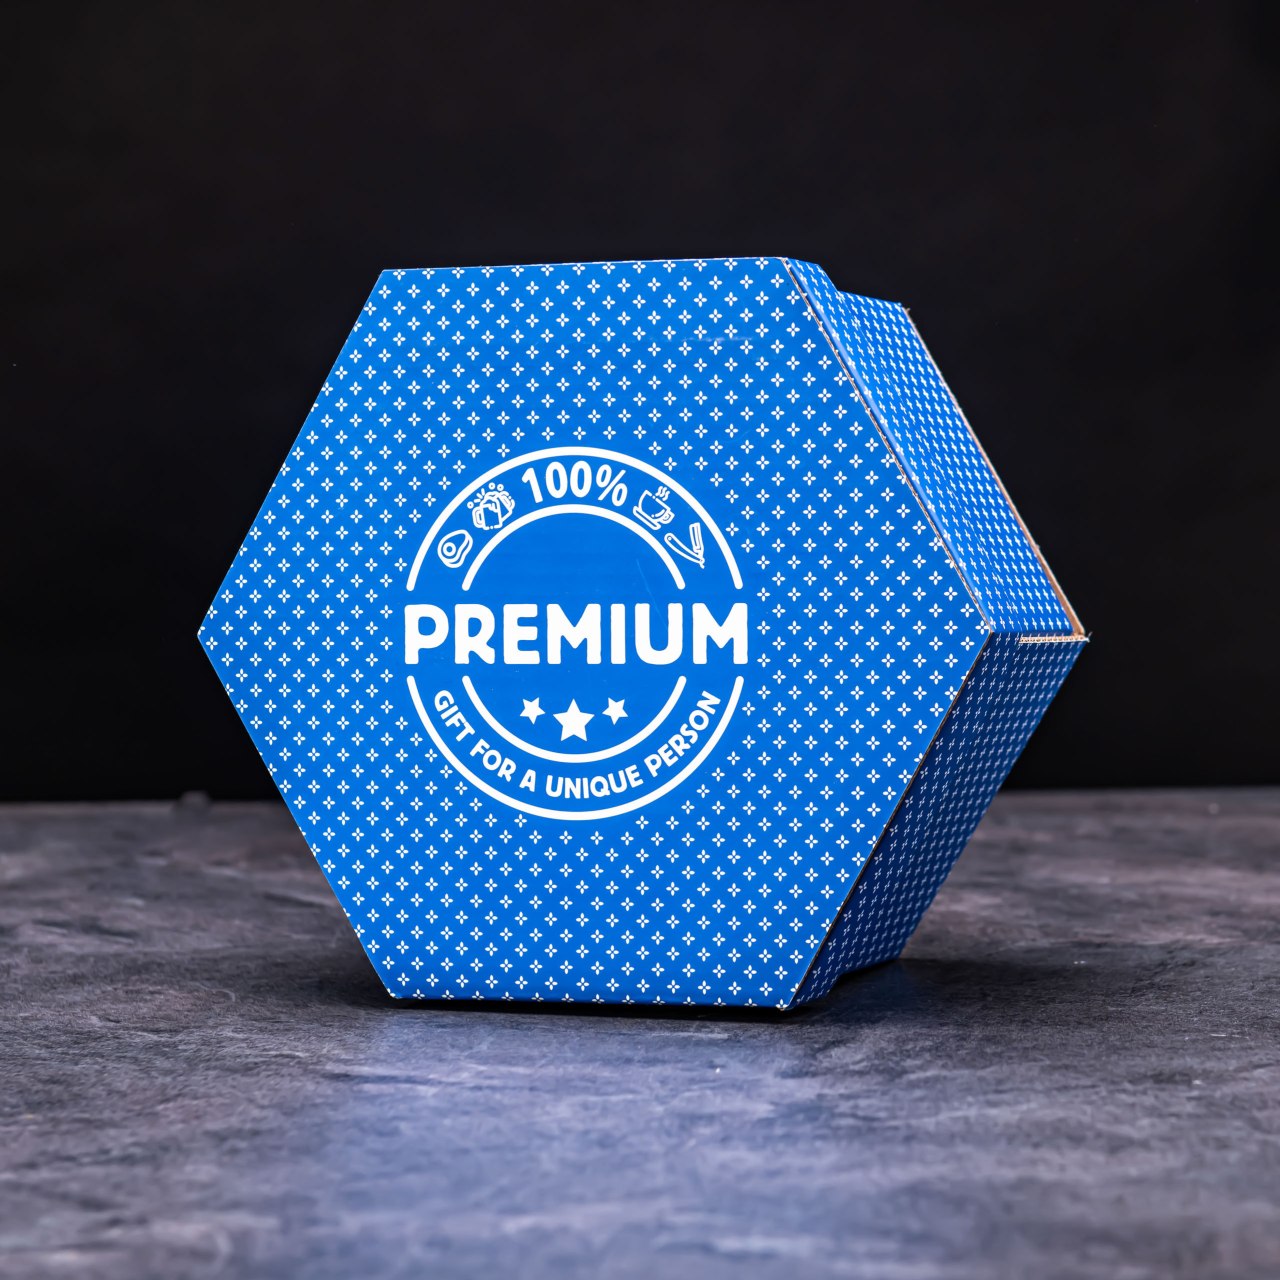 Hexagon plný sladkostí - Modrý